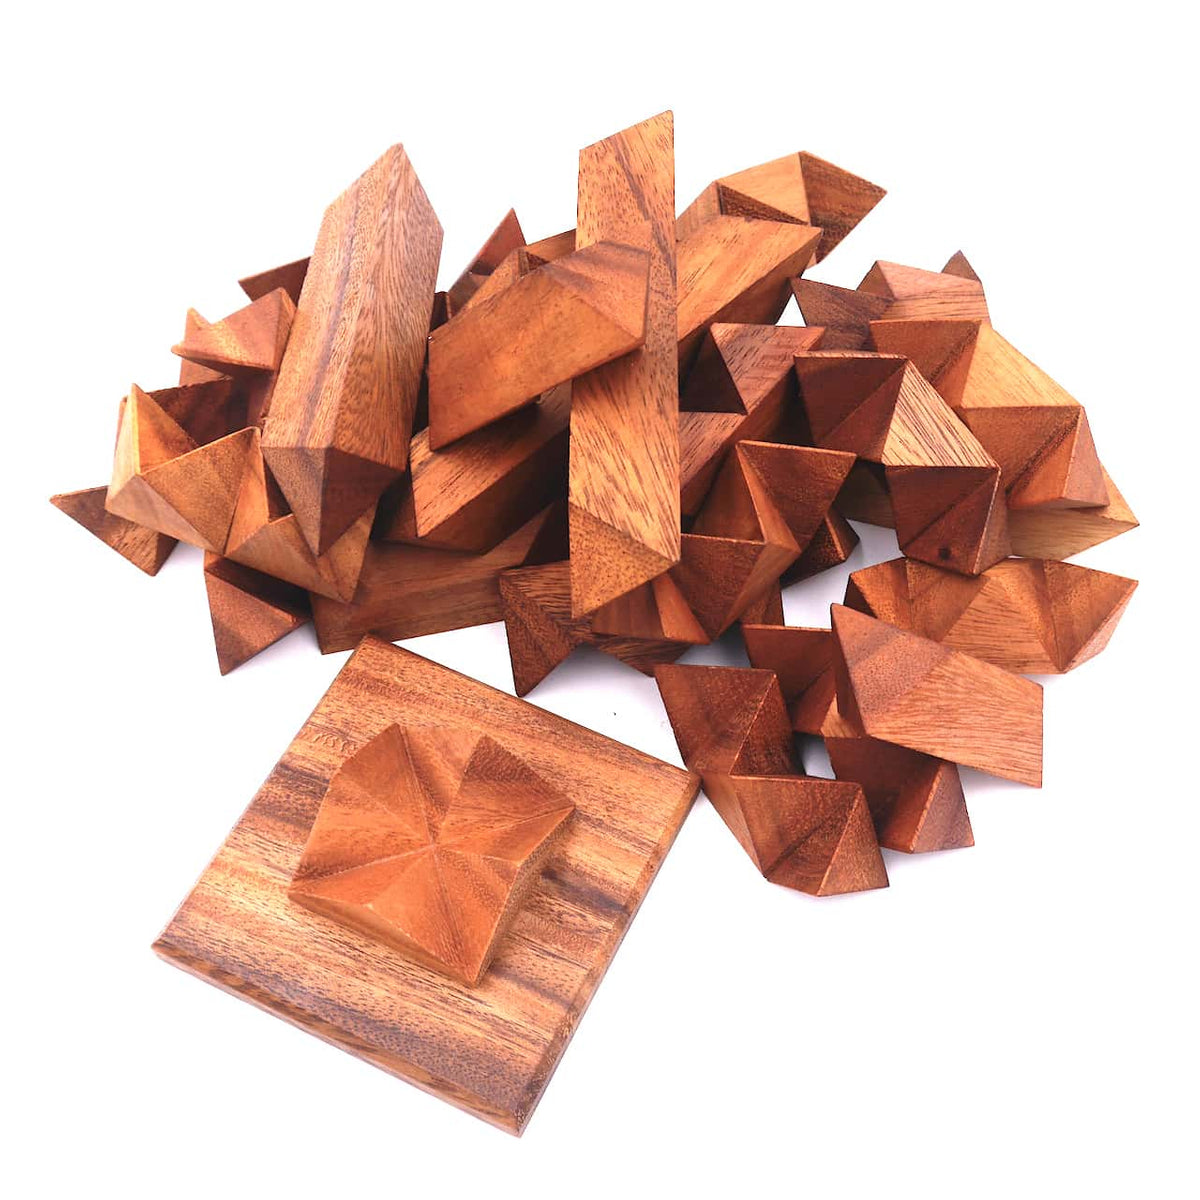 Ein kniffliges Denkspiel aus Holz, bei dem die Spieler Teile zusammenfügen müssen, um den Stern zu vervollständigen.